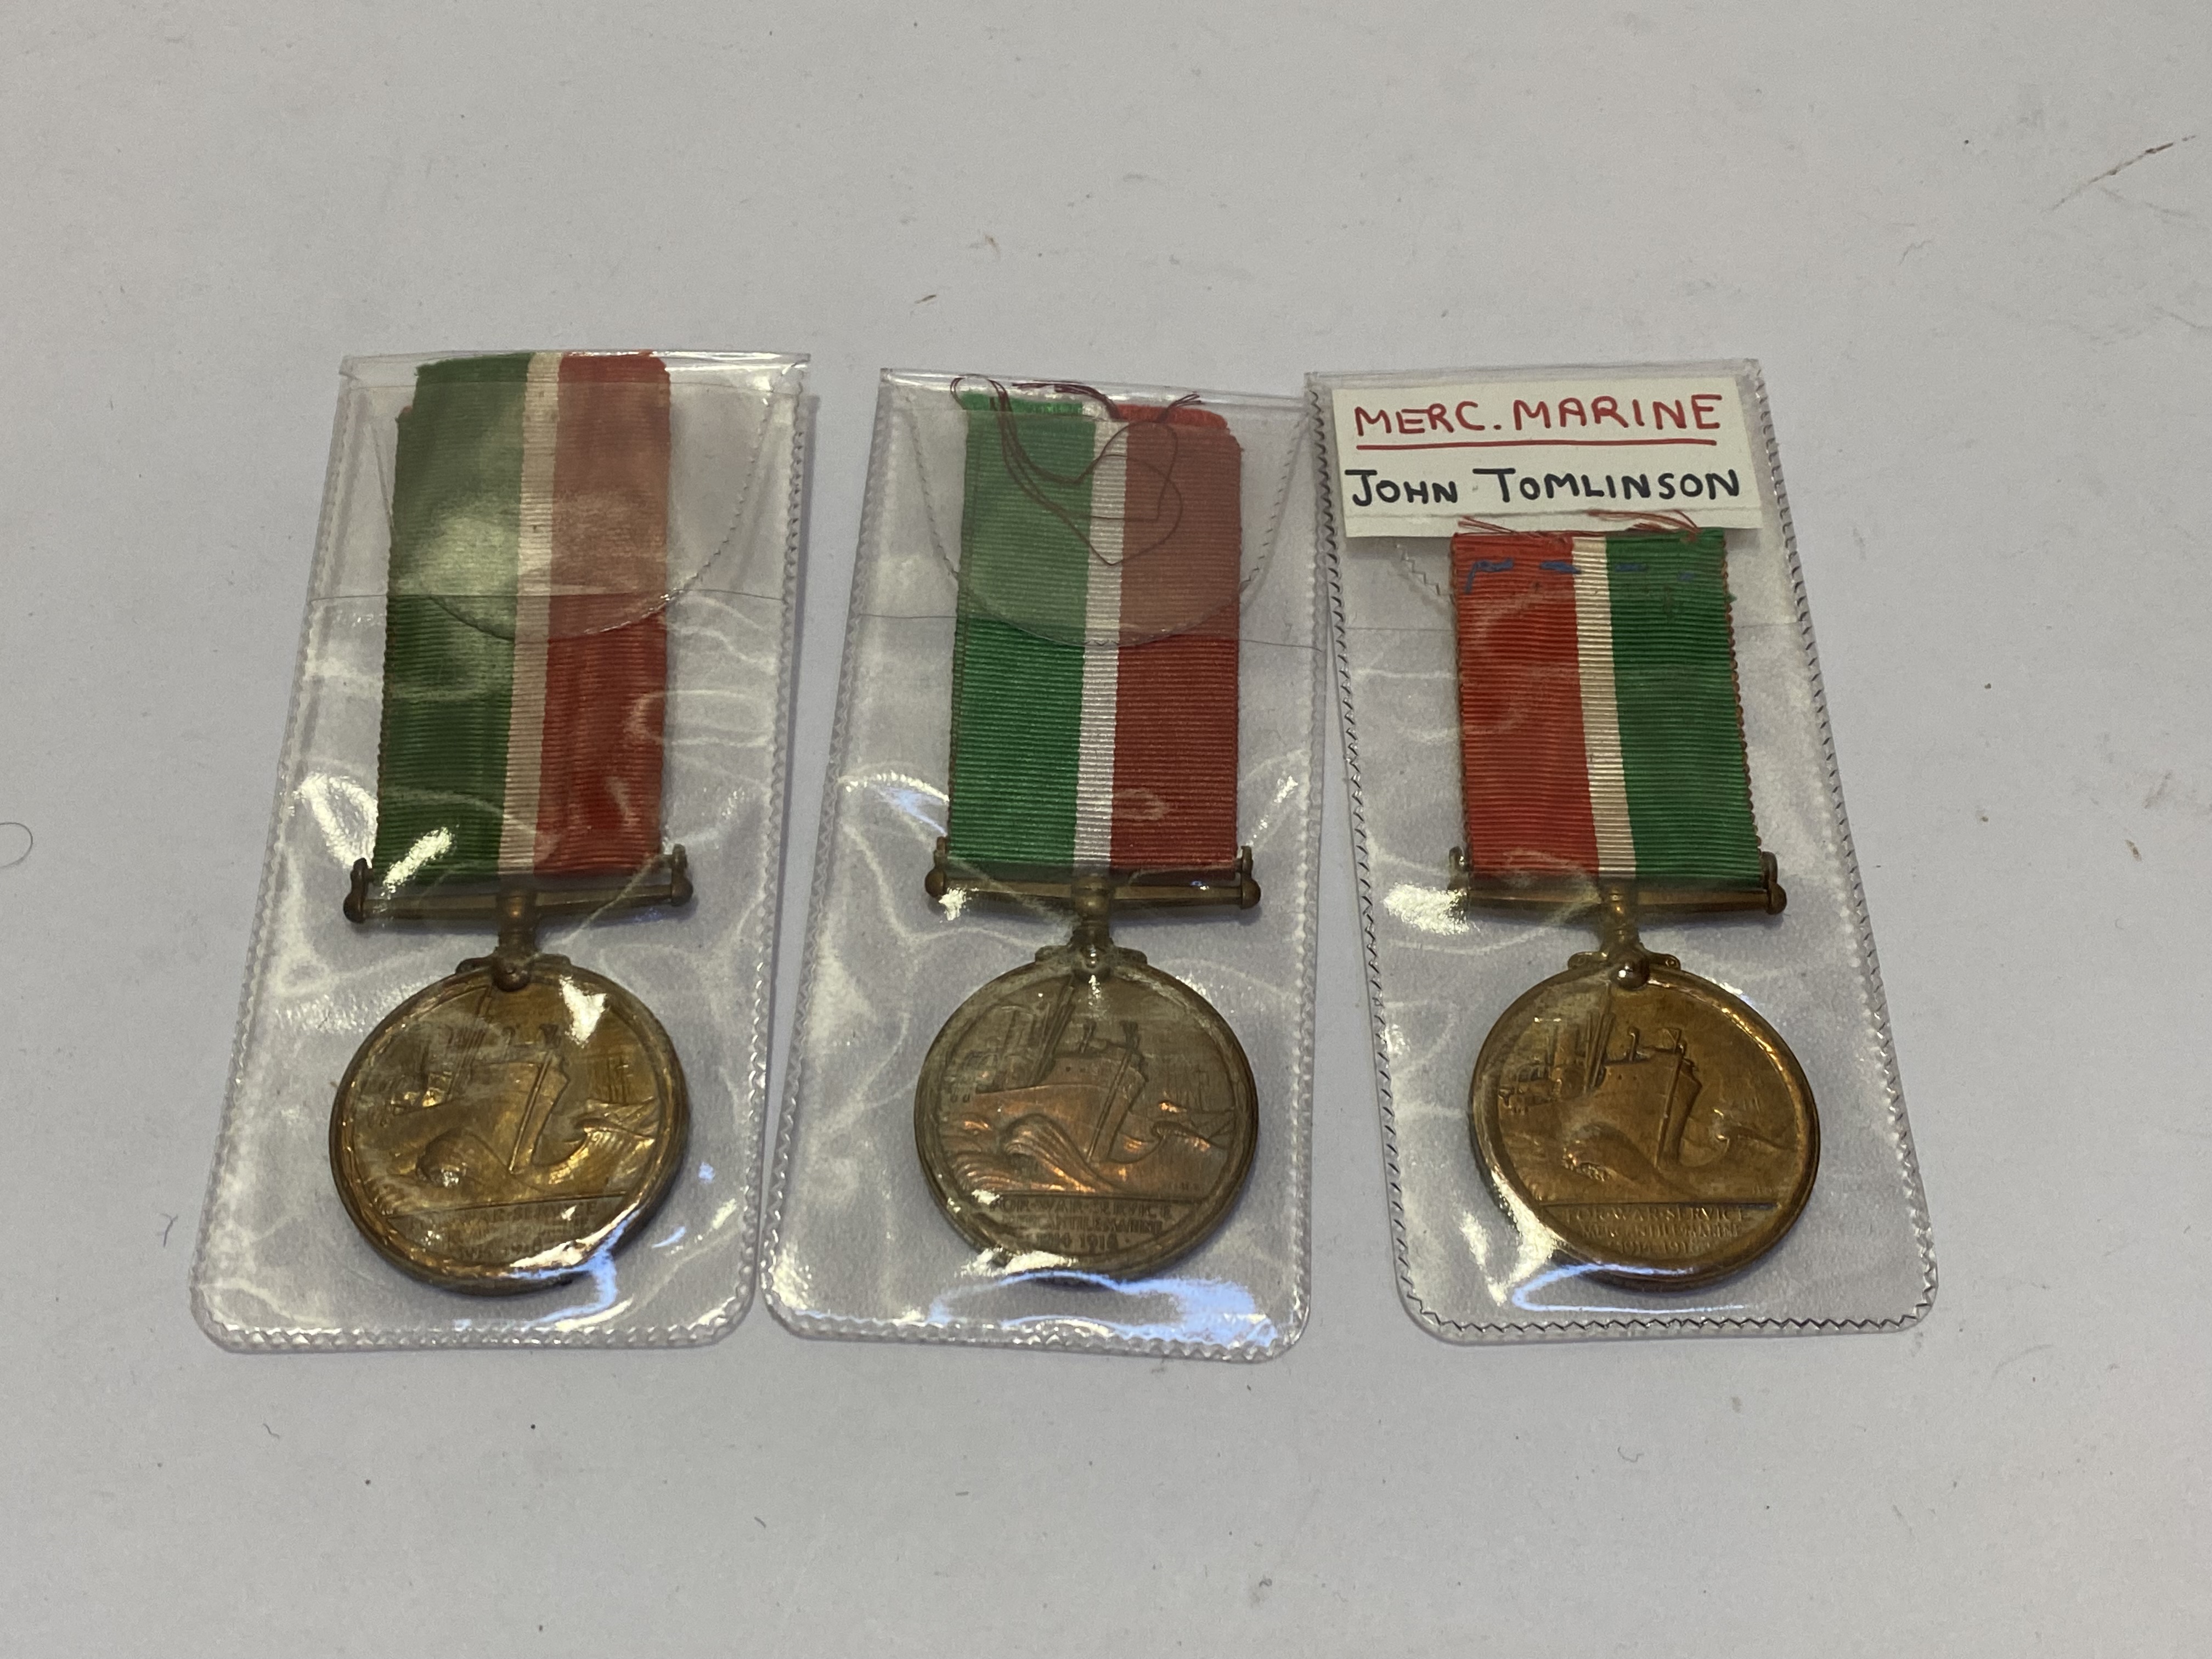 Mercantile Marine War Medal (3), (JOHN TOMLINSON, JOHN TRAYNOR, NEIL LIVINGSTON)